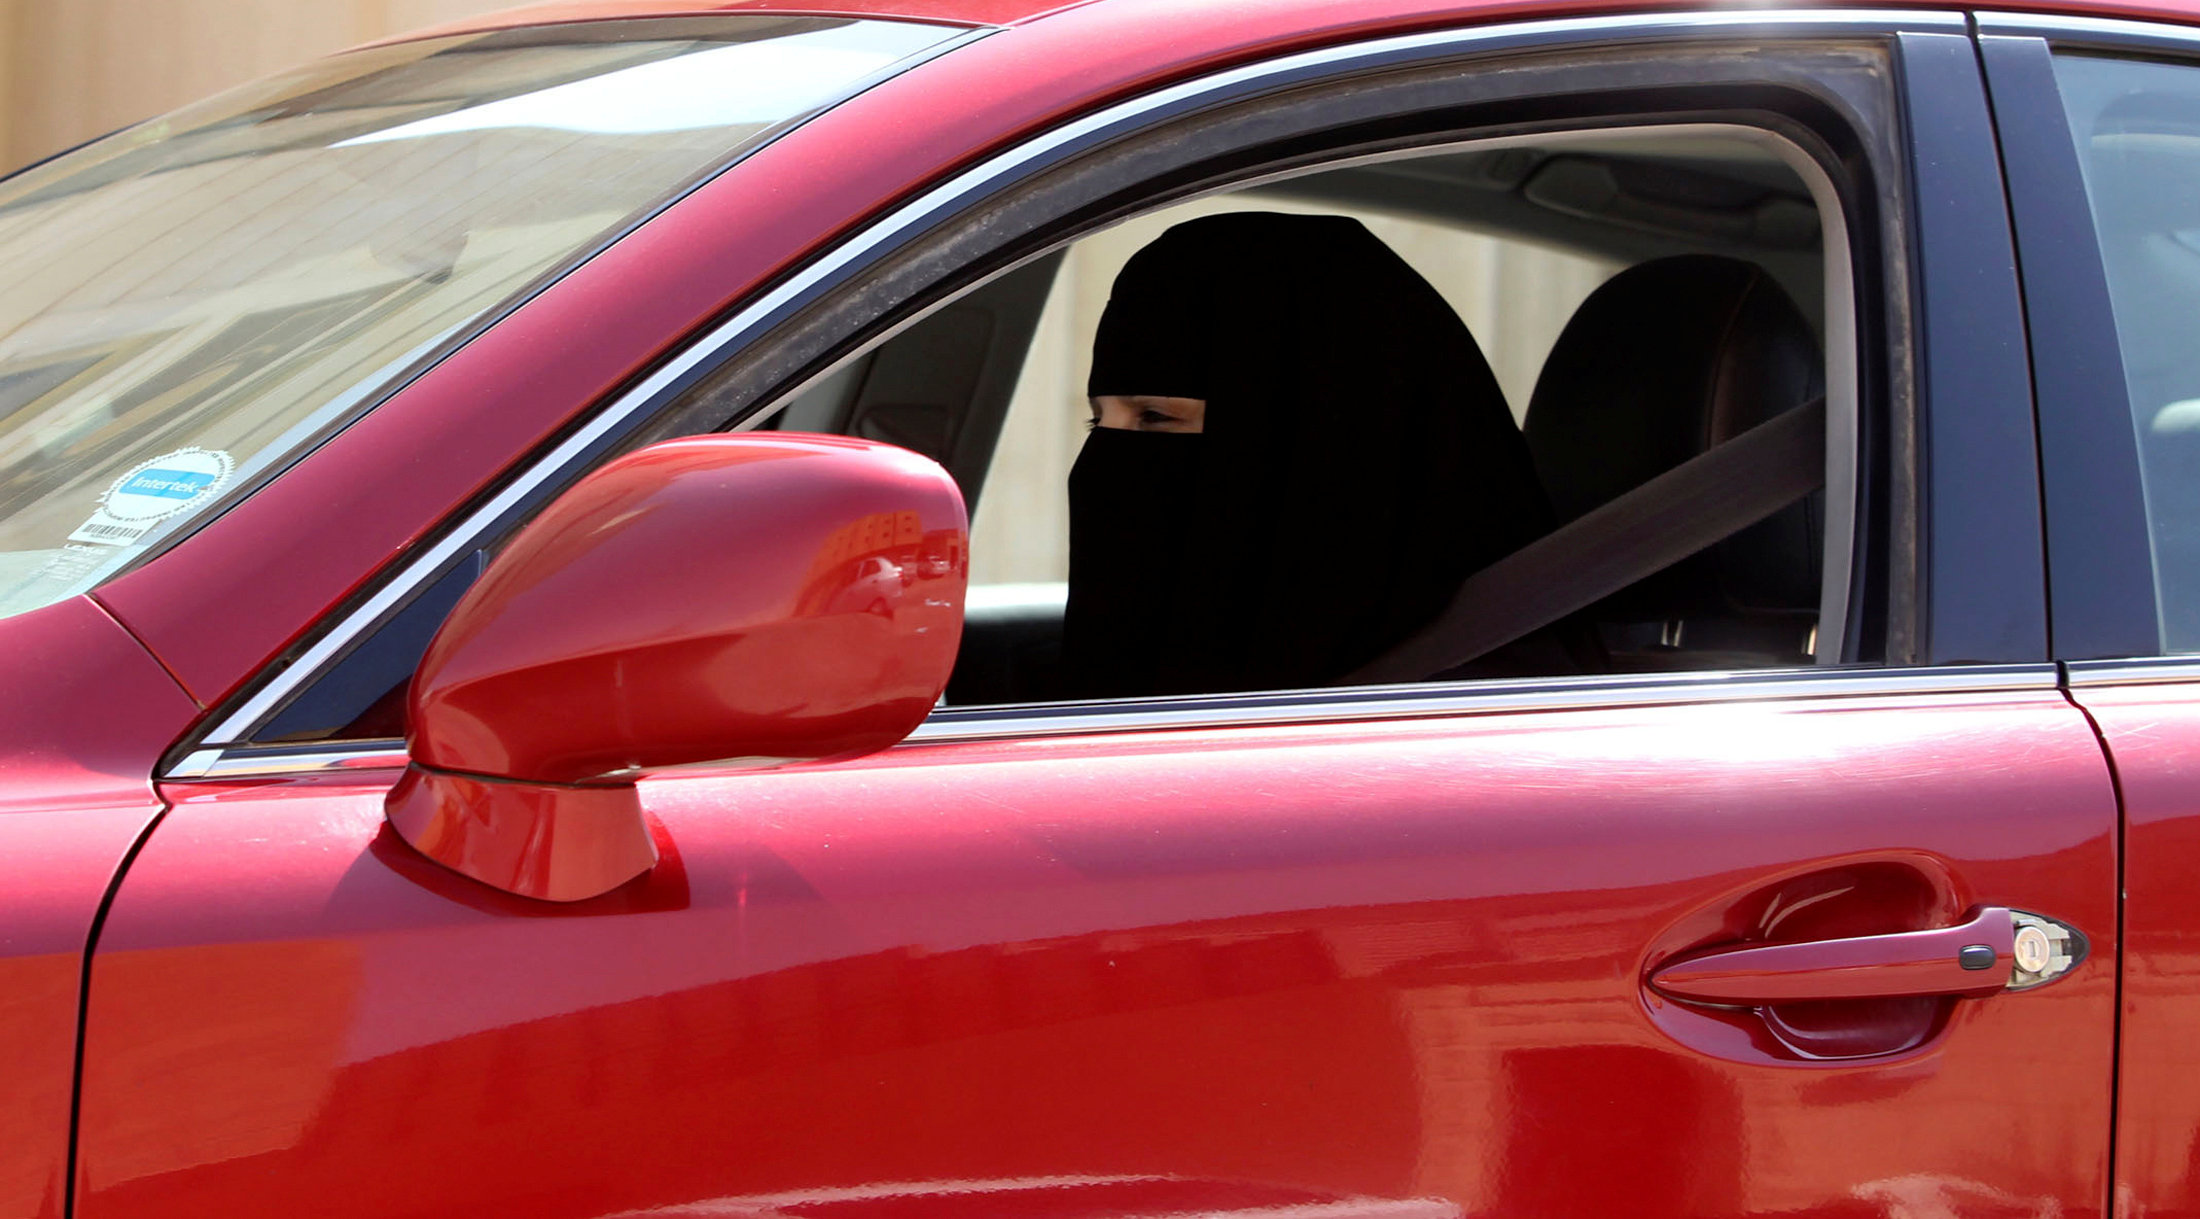 King Salman issues decree allowing women to drive in Saudi Arabia